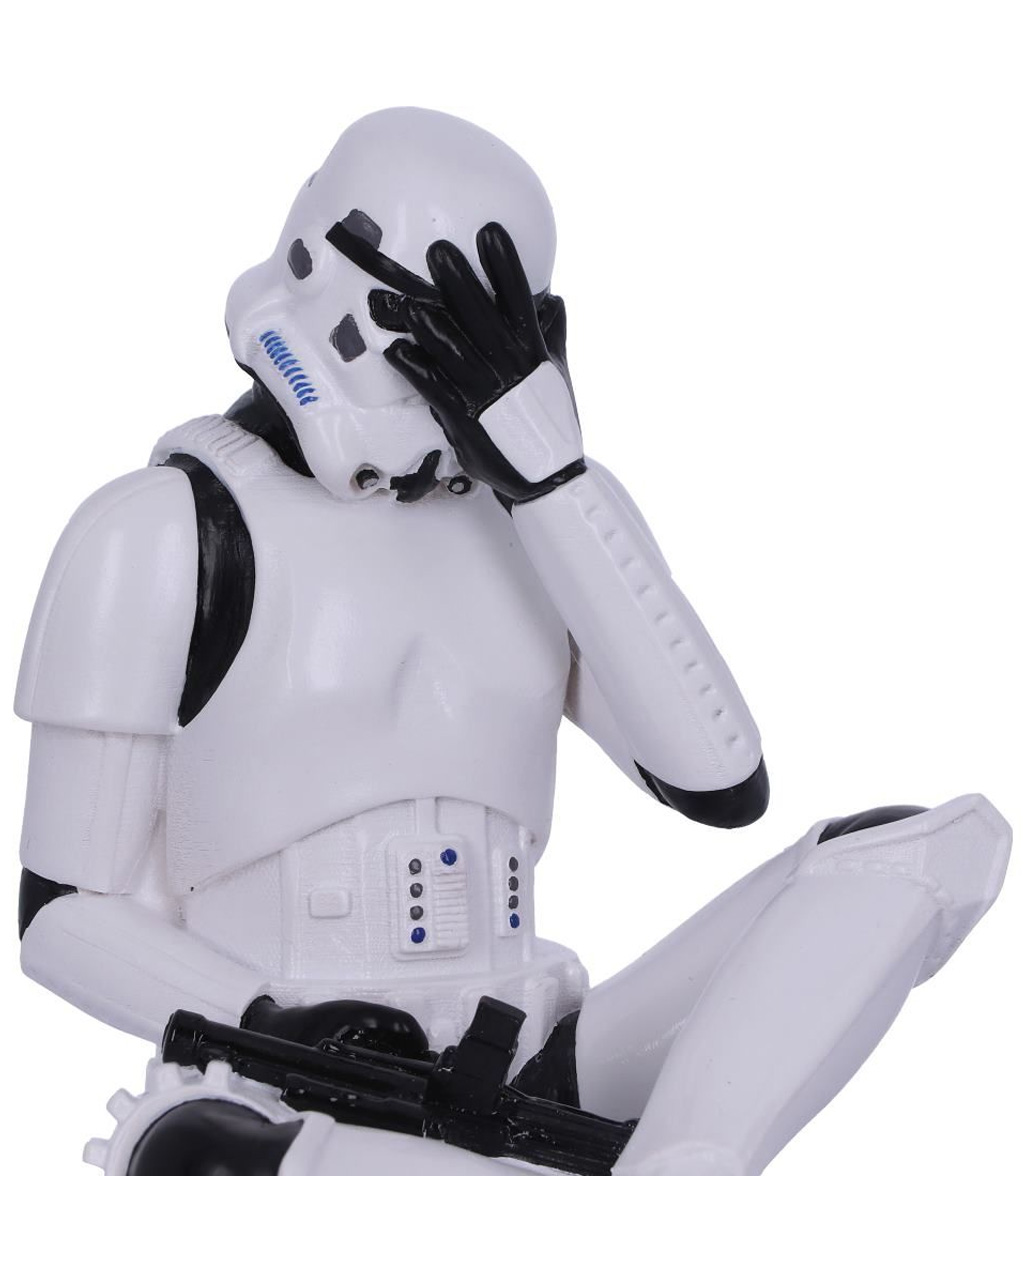 Collectible Stormtrooper Figurine Hear See Speak No Evil Star Wars